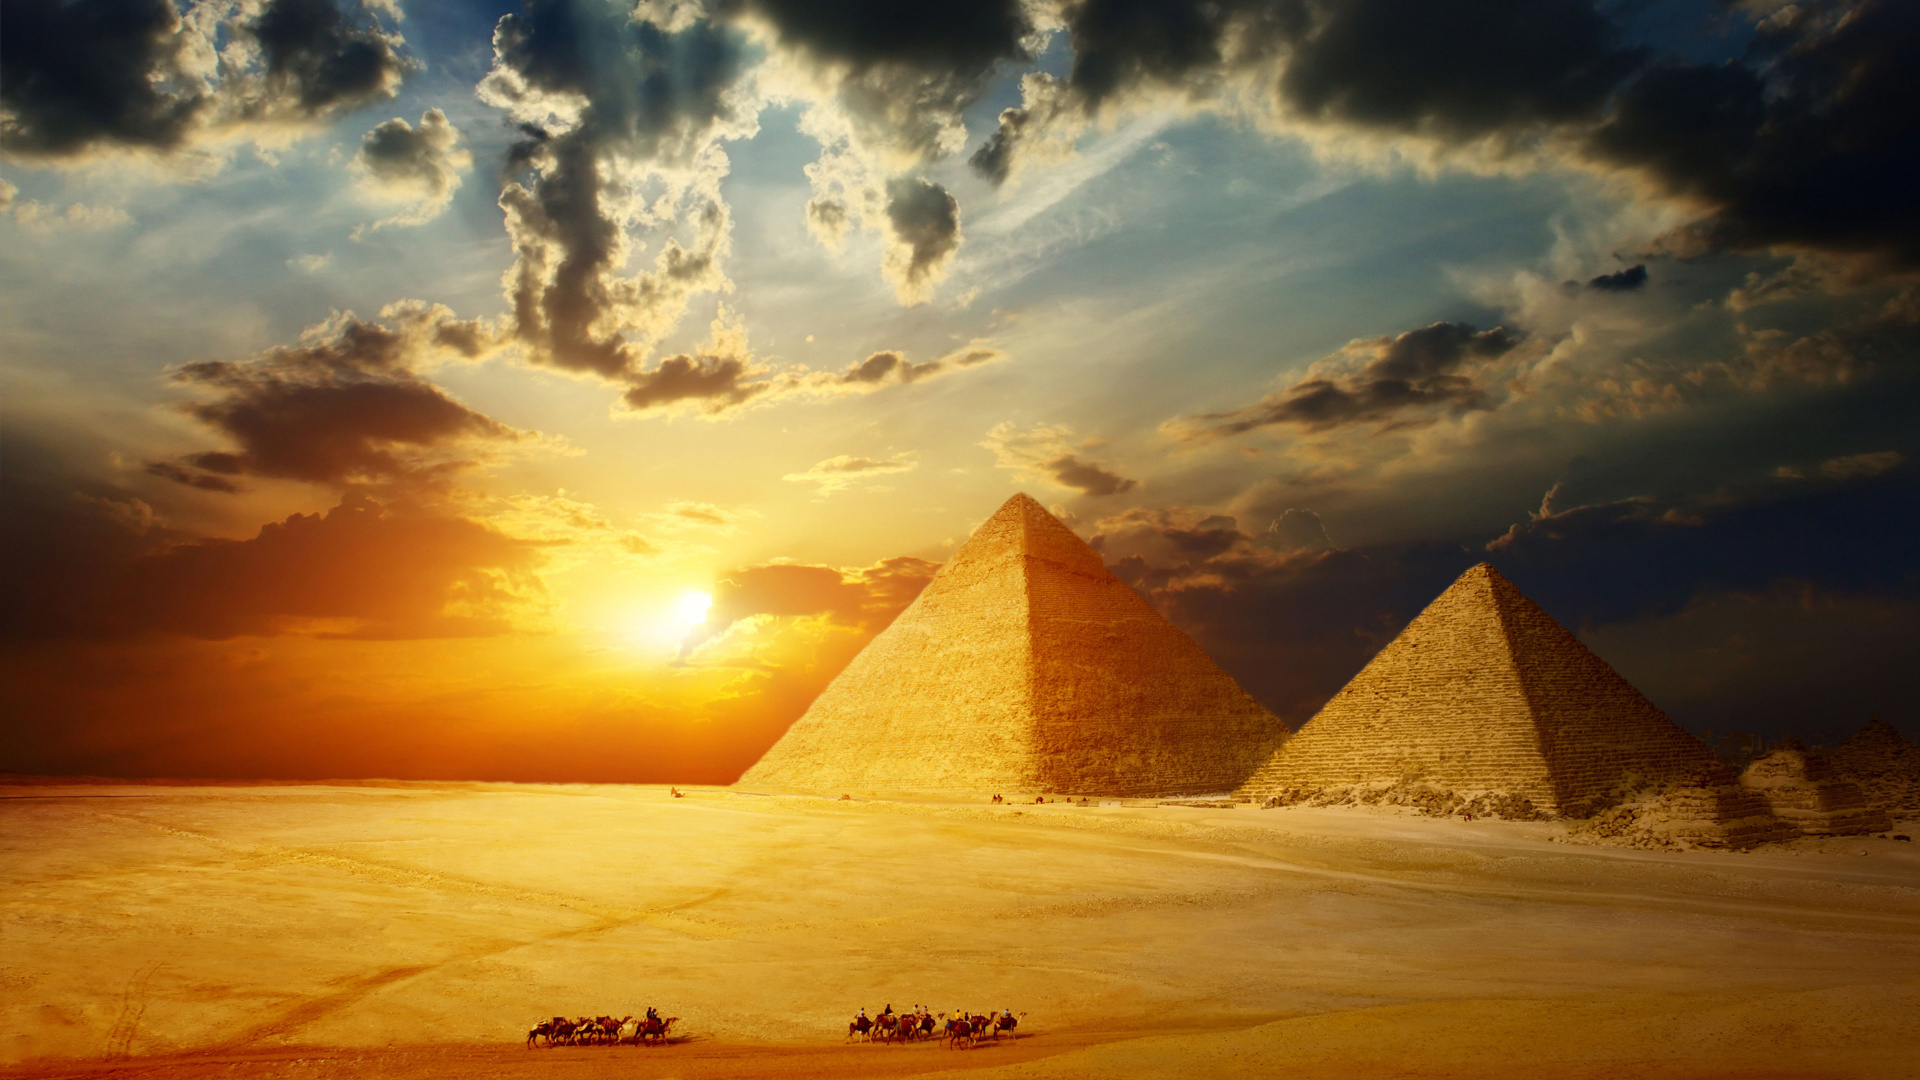 开罗, 埃及金字塔, 金字塔, 里程碑, 纪念碑 壁纸 1920x1080 允许